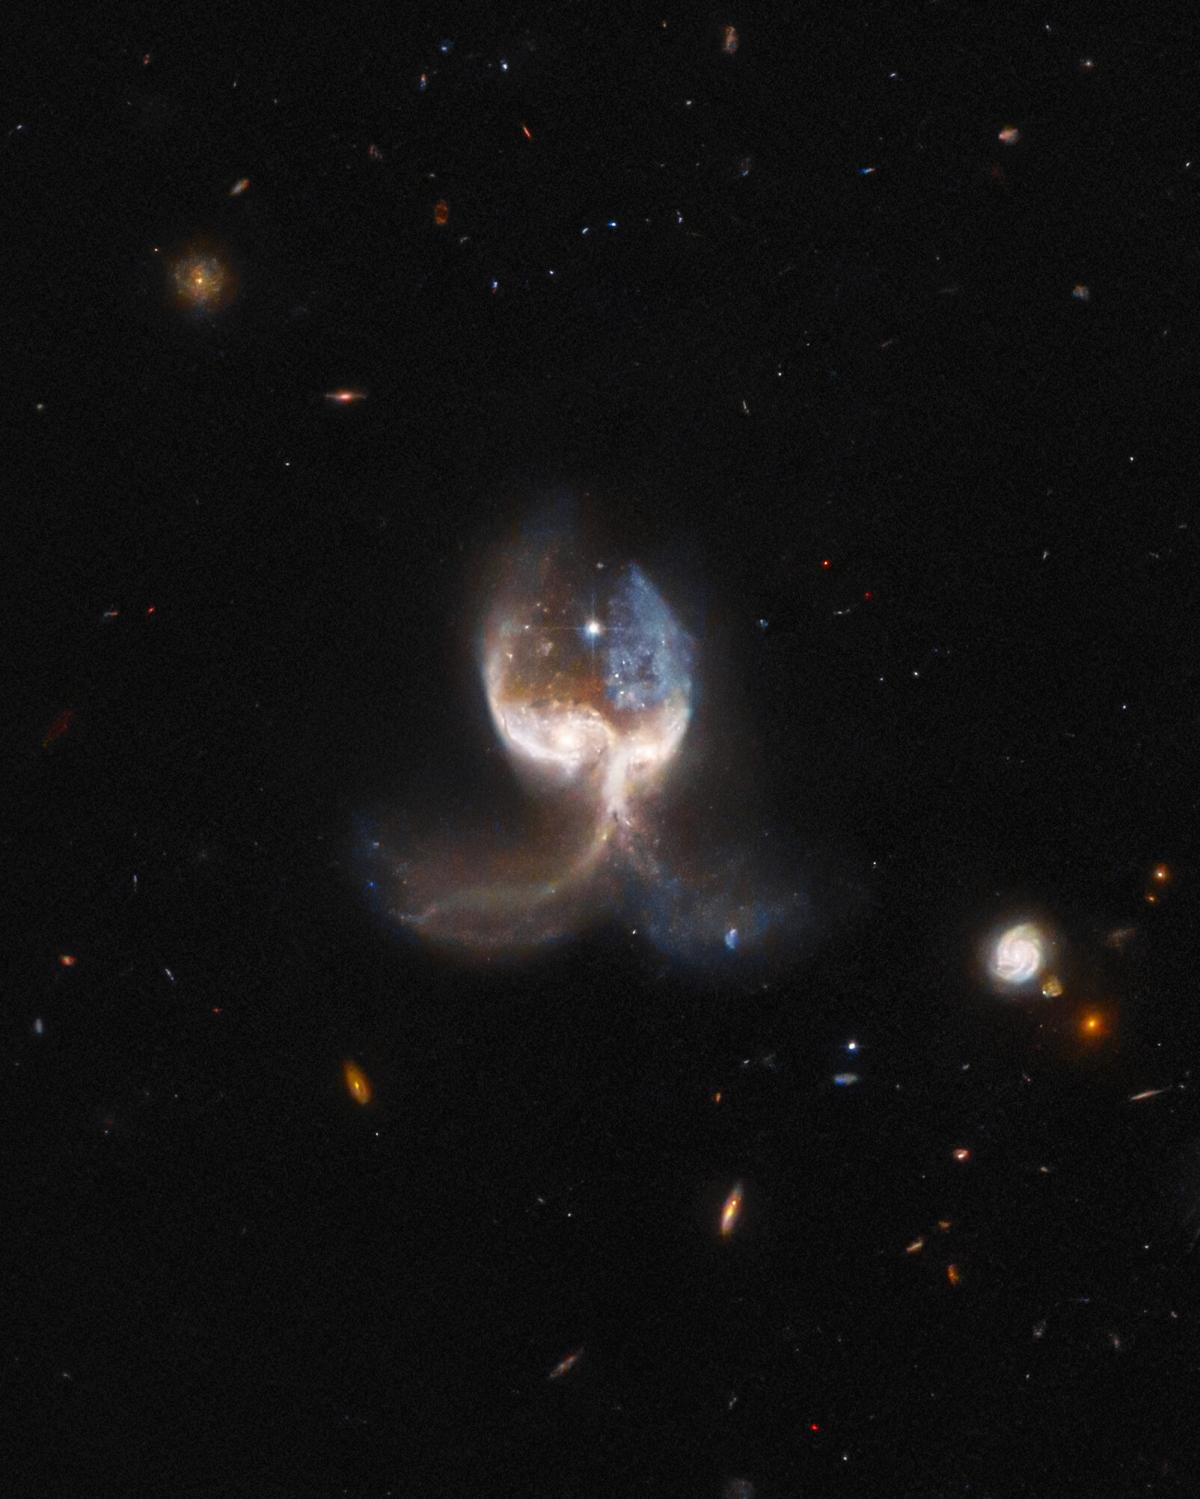 Галактики перебувають у самому розпалі зіткнення / фото ESA/Hubble & NASA, W. Keel; J. Schmidt